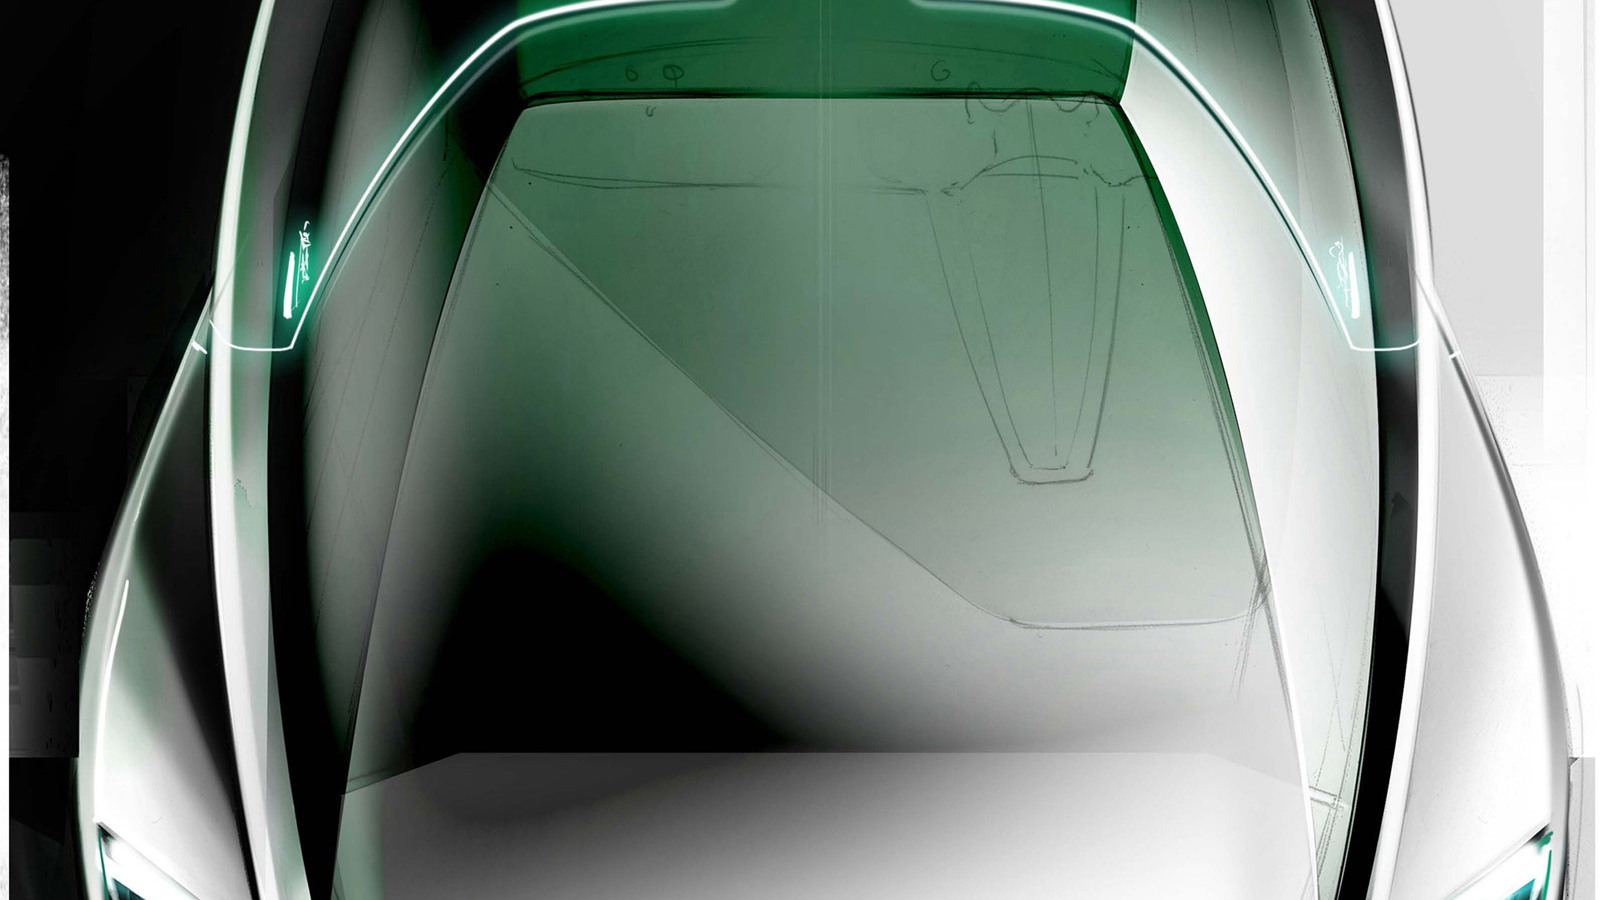 Audi fleet shuttle quattro for ‘Ender’s Game’ movie